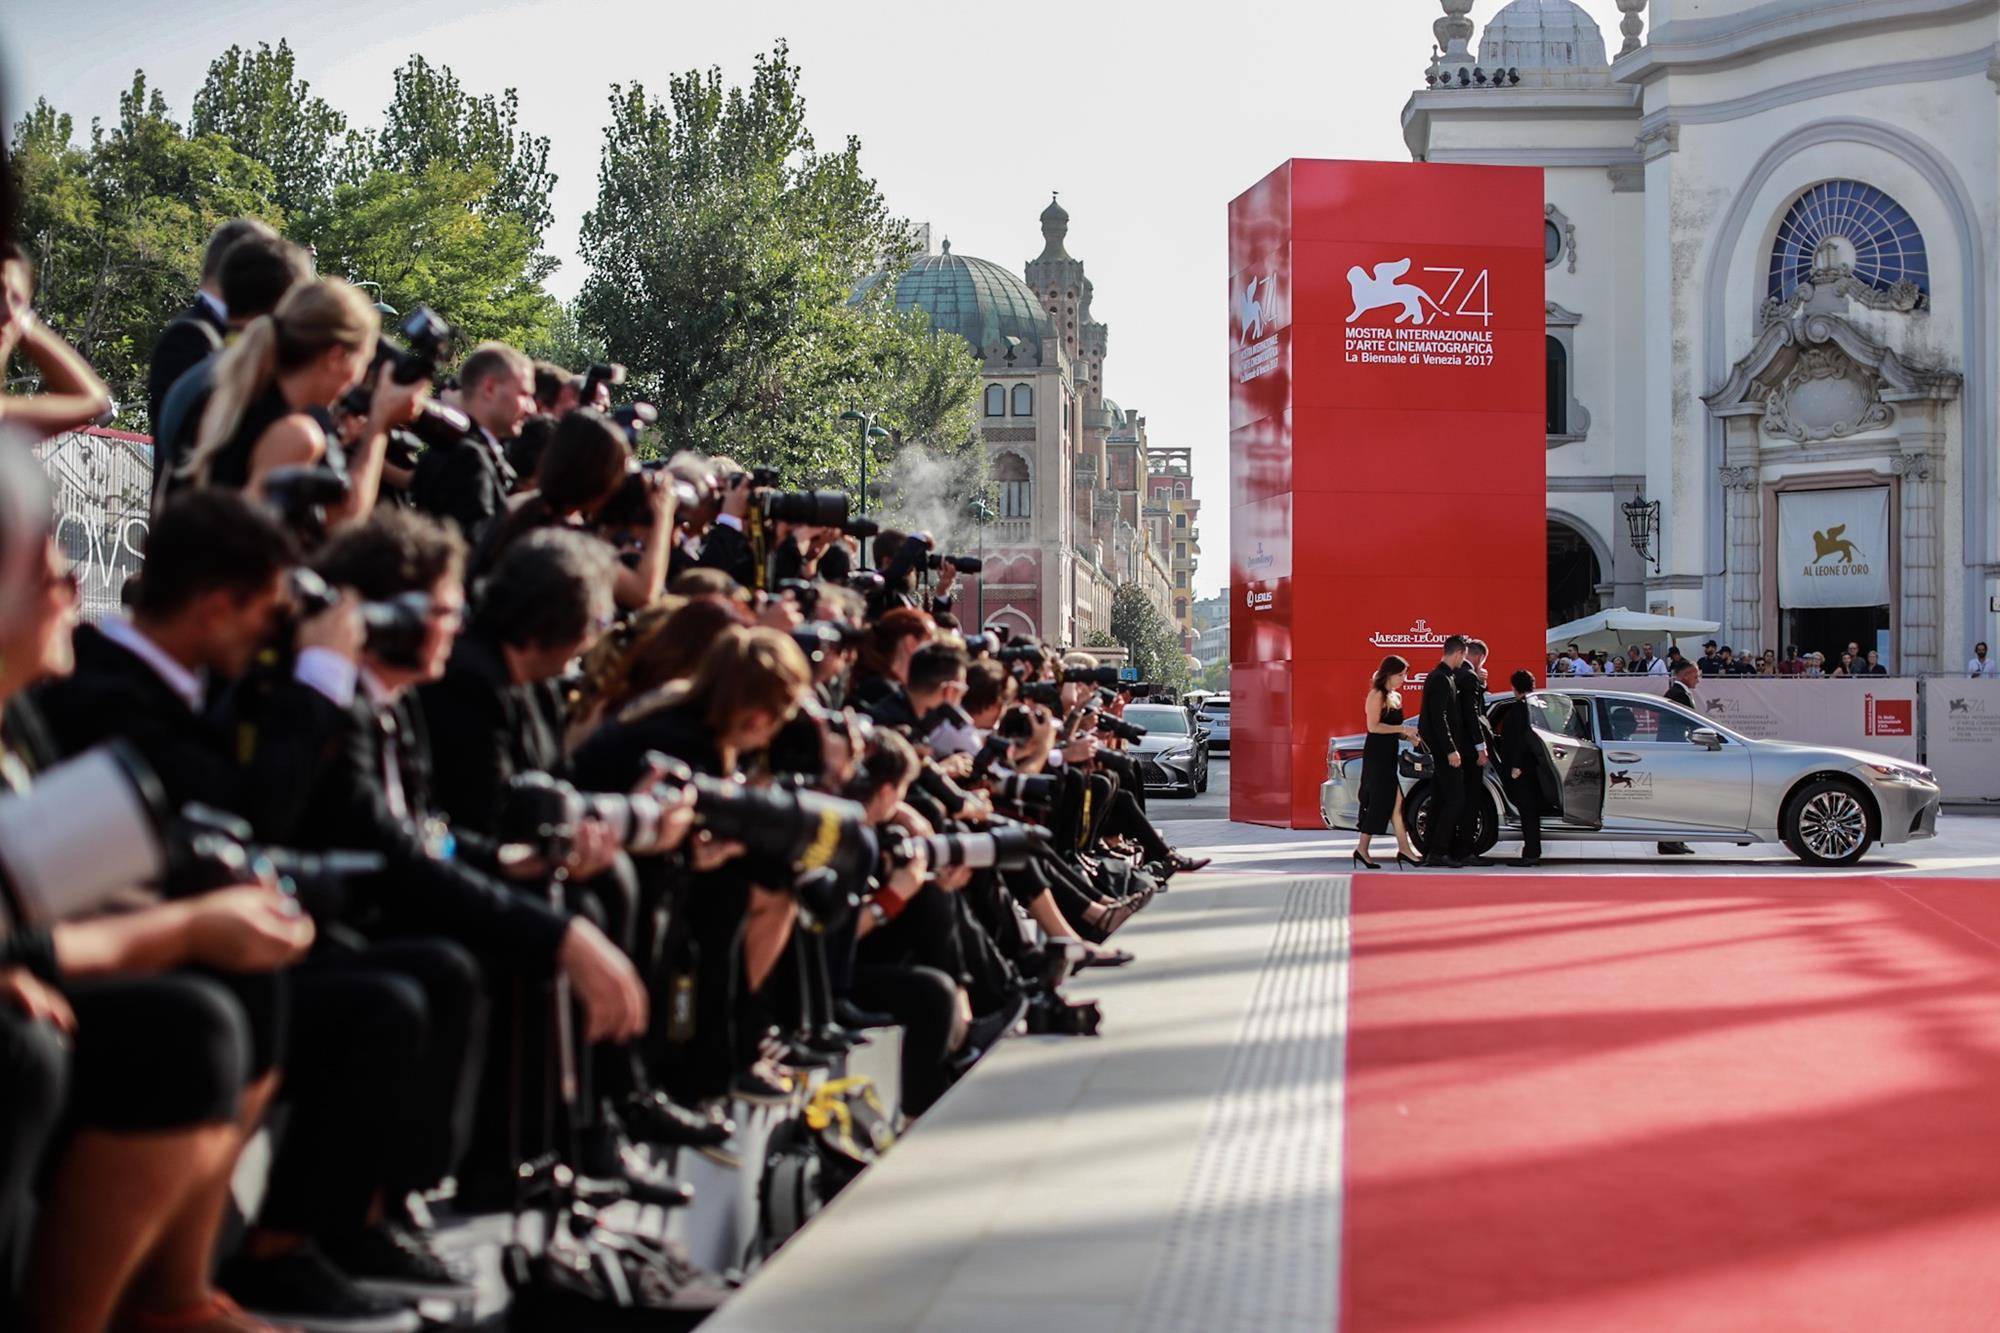 La Festivalul de Film de la Veneția, femeile regizoare domină eleganța pe covorul roșu